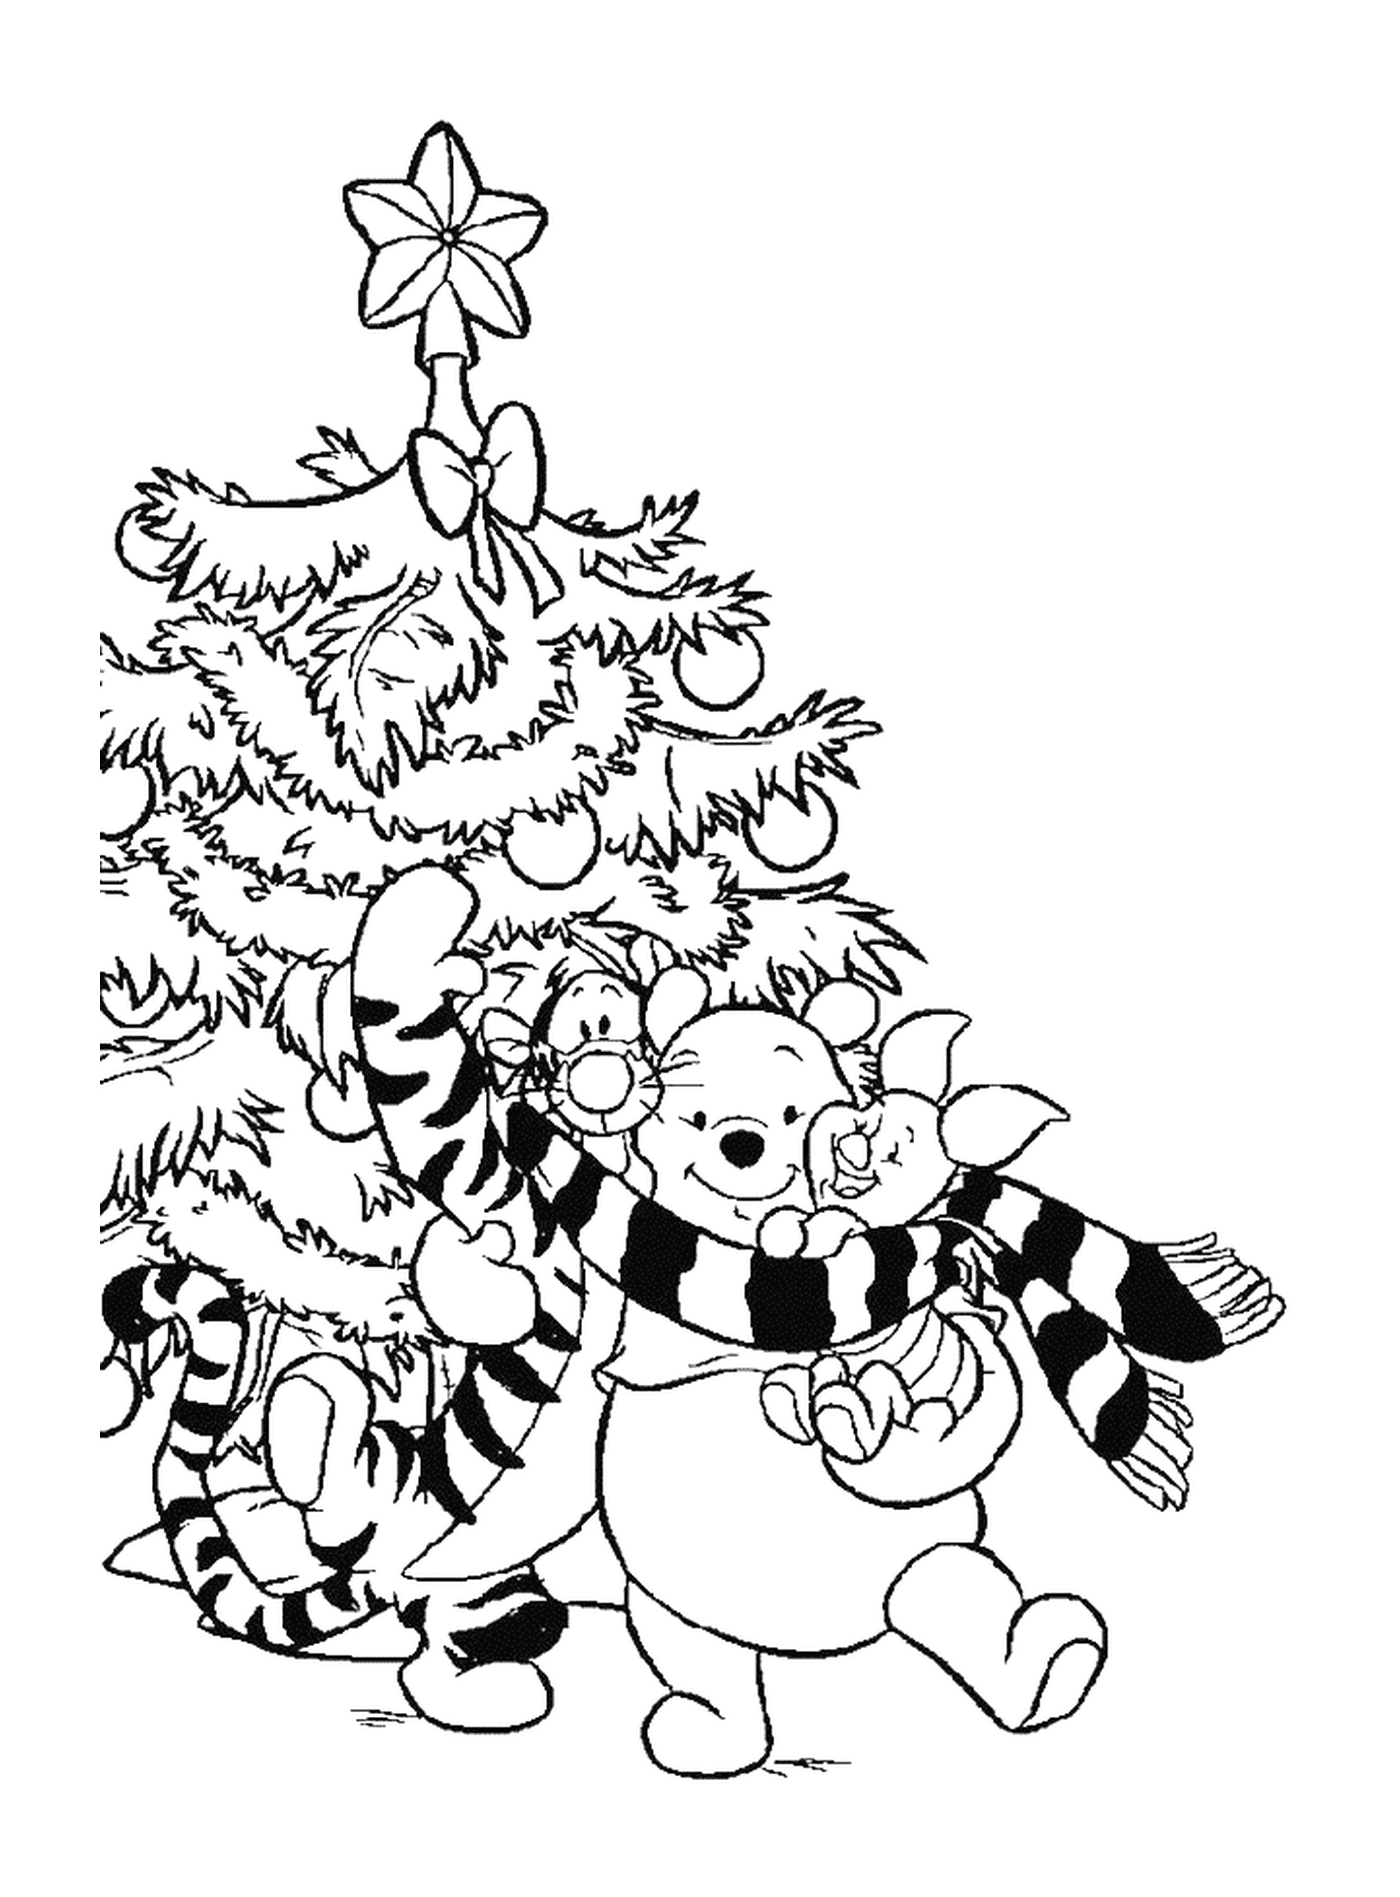  (ويني) و(تيجرو) و(بورسينت) أمام شجرة عيد الميلاد 